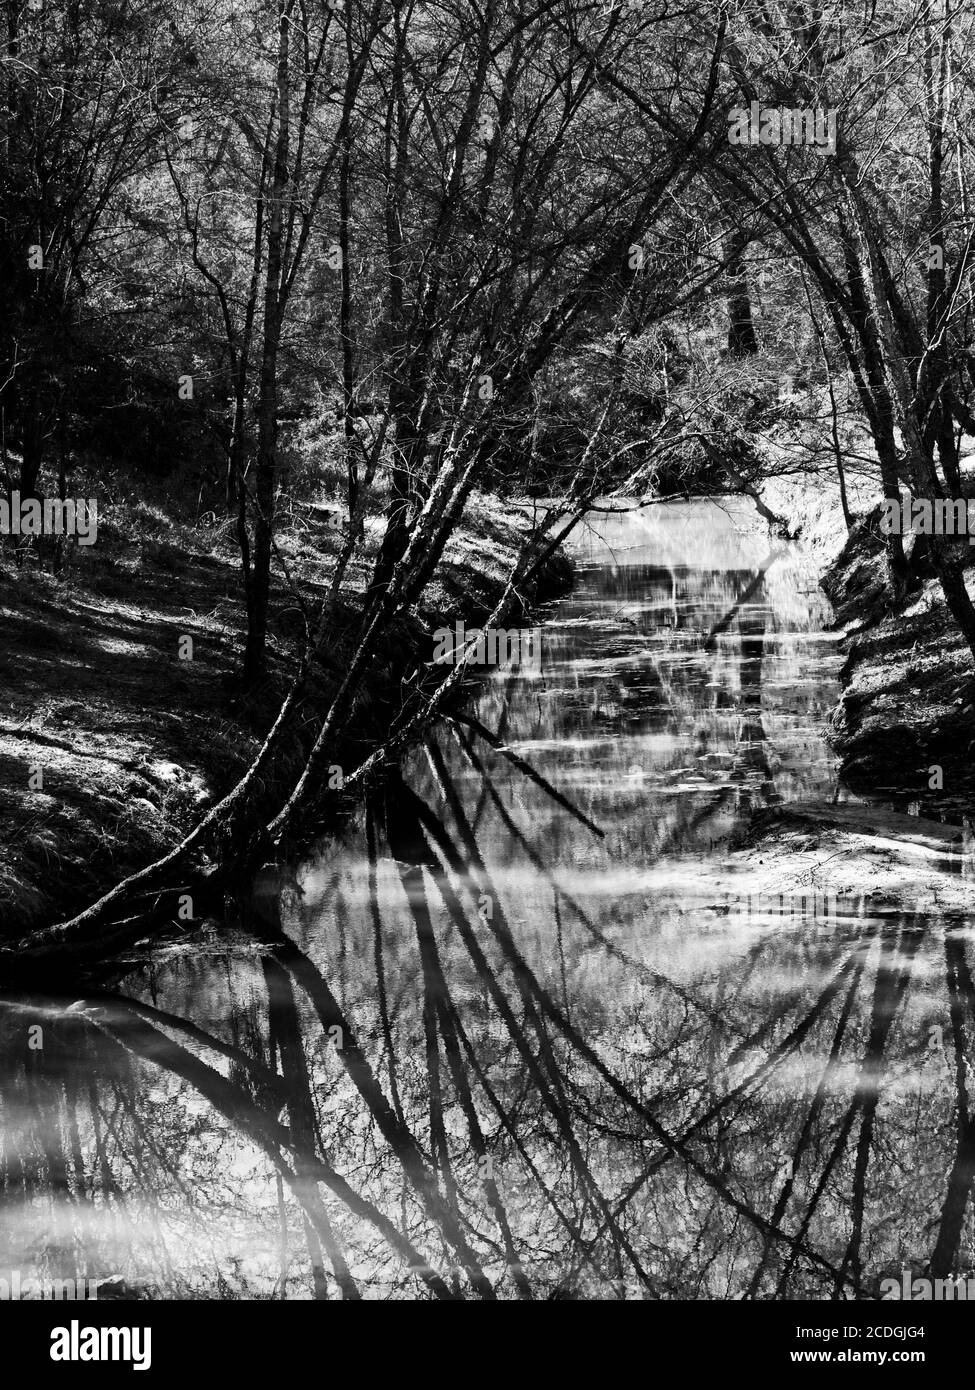 The Woodlands TX USA - 02-28-2020 - réflexion d'arbre En cours d'eau en noir et blanc Banque D'Images